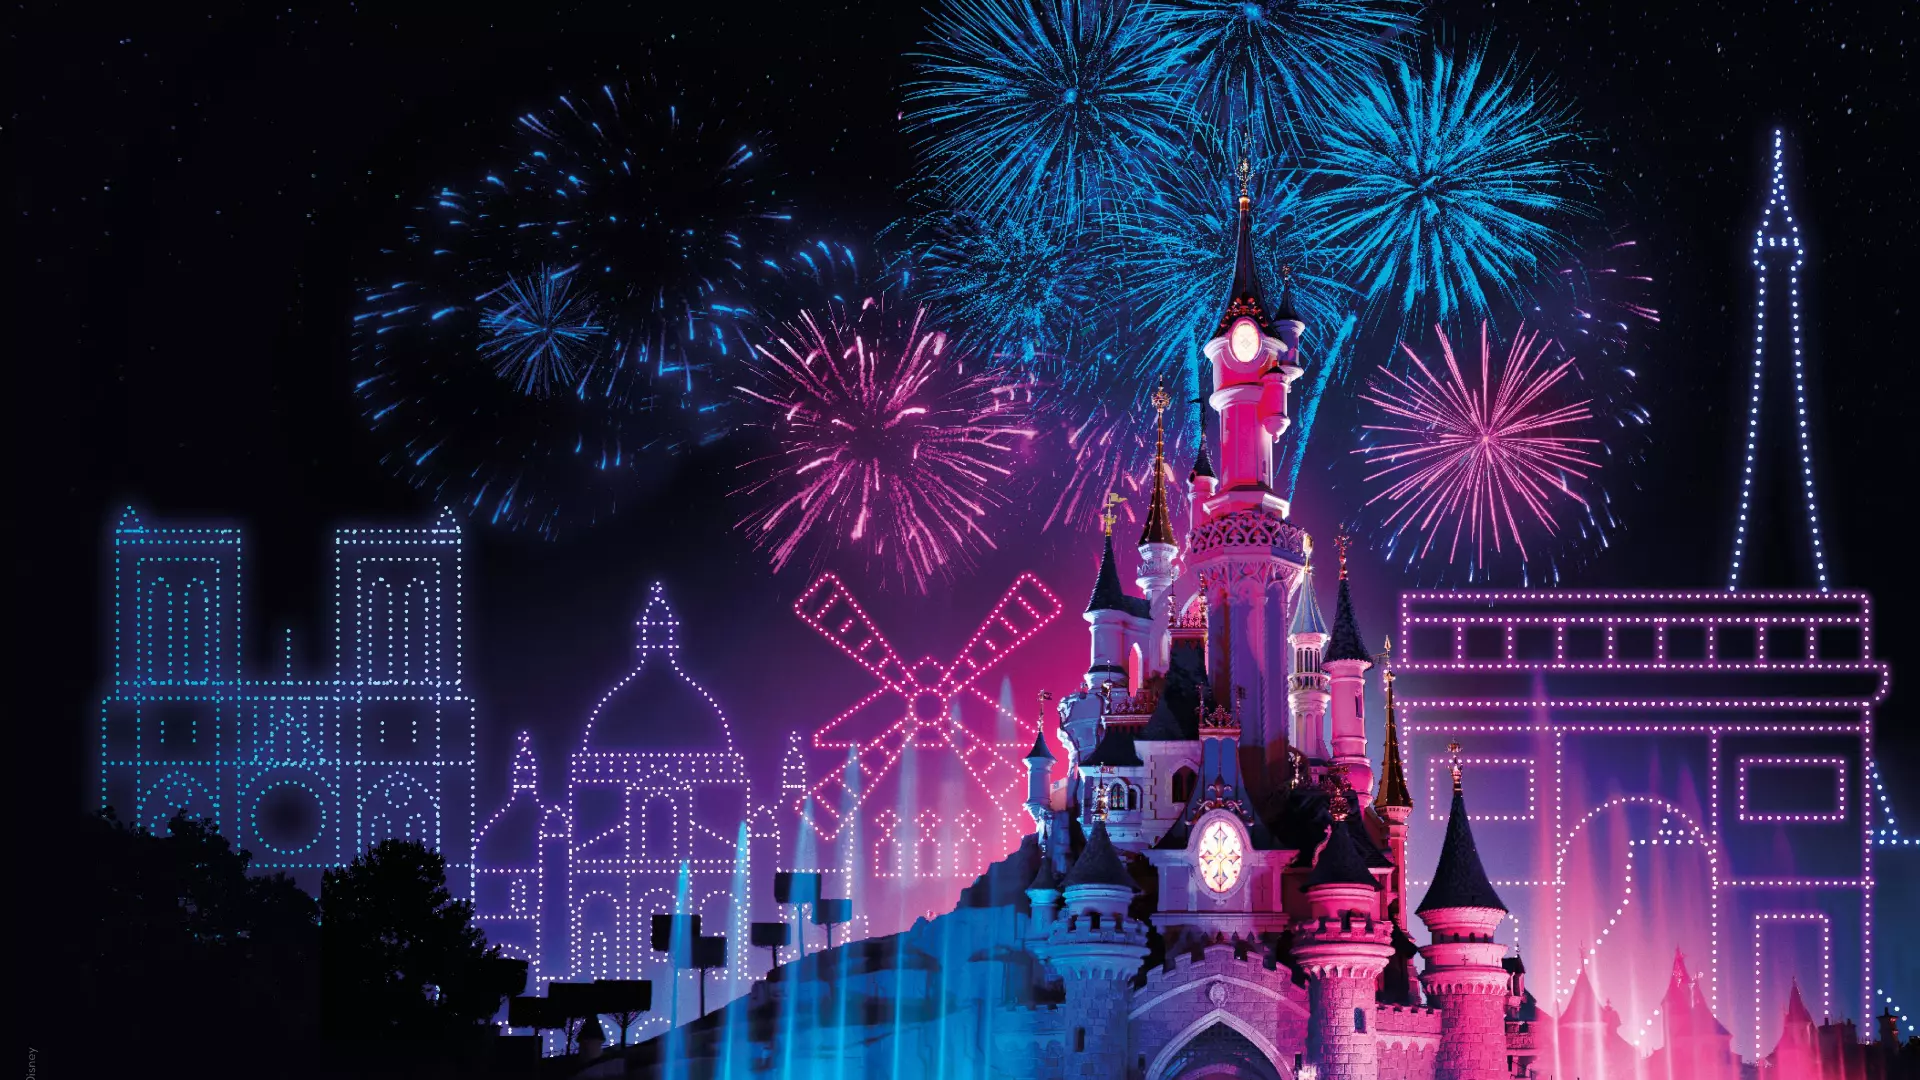 Le feu d'artifice du 14 juillet - Disneyland Paris